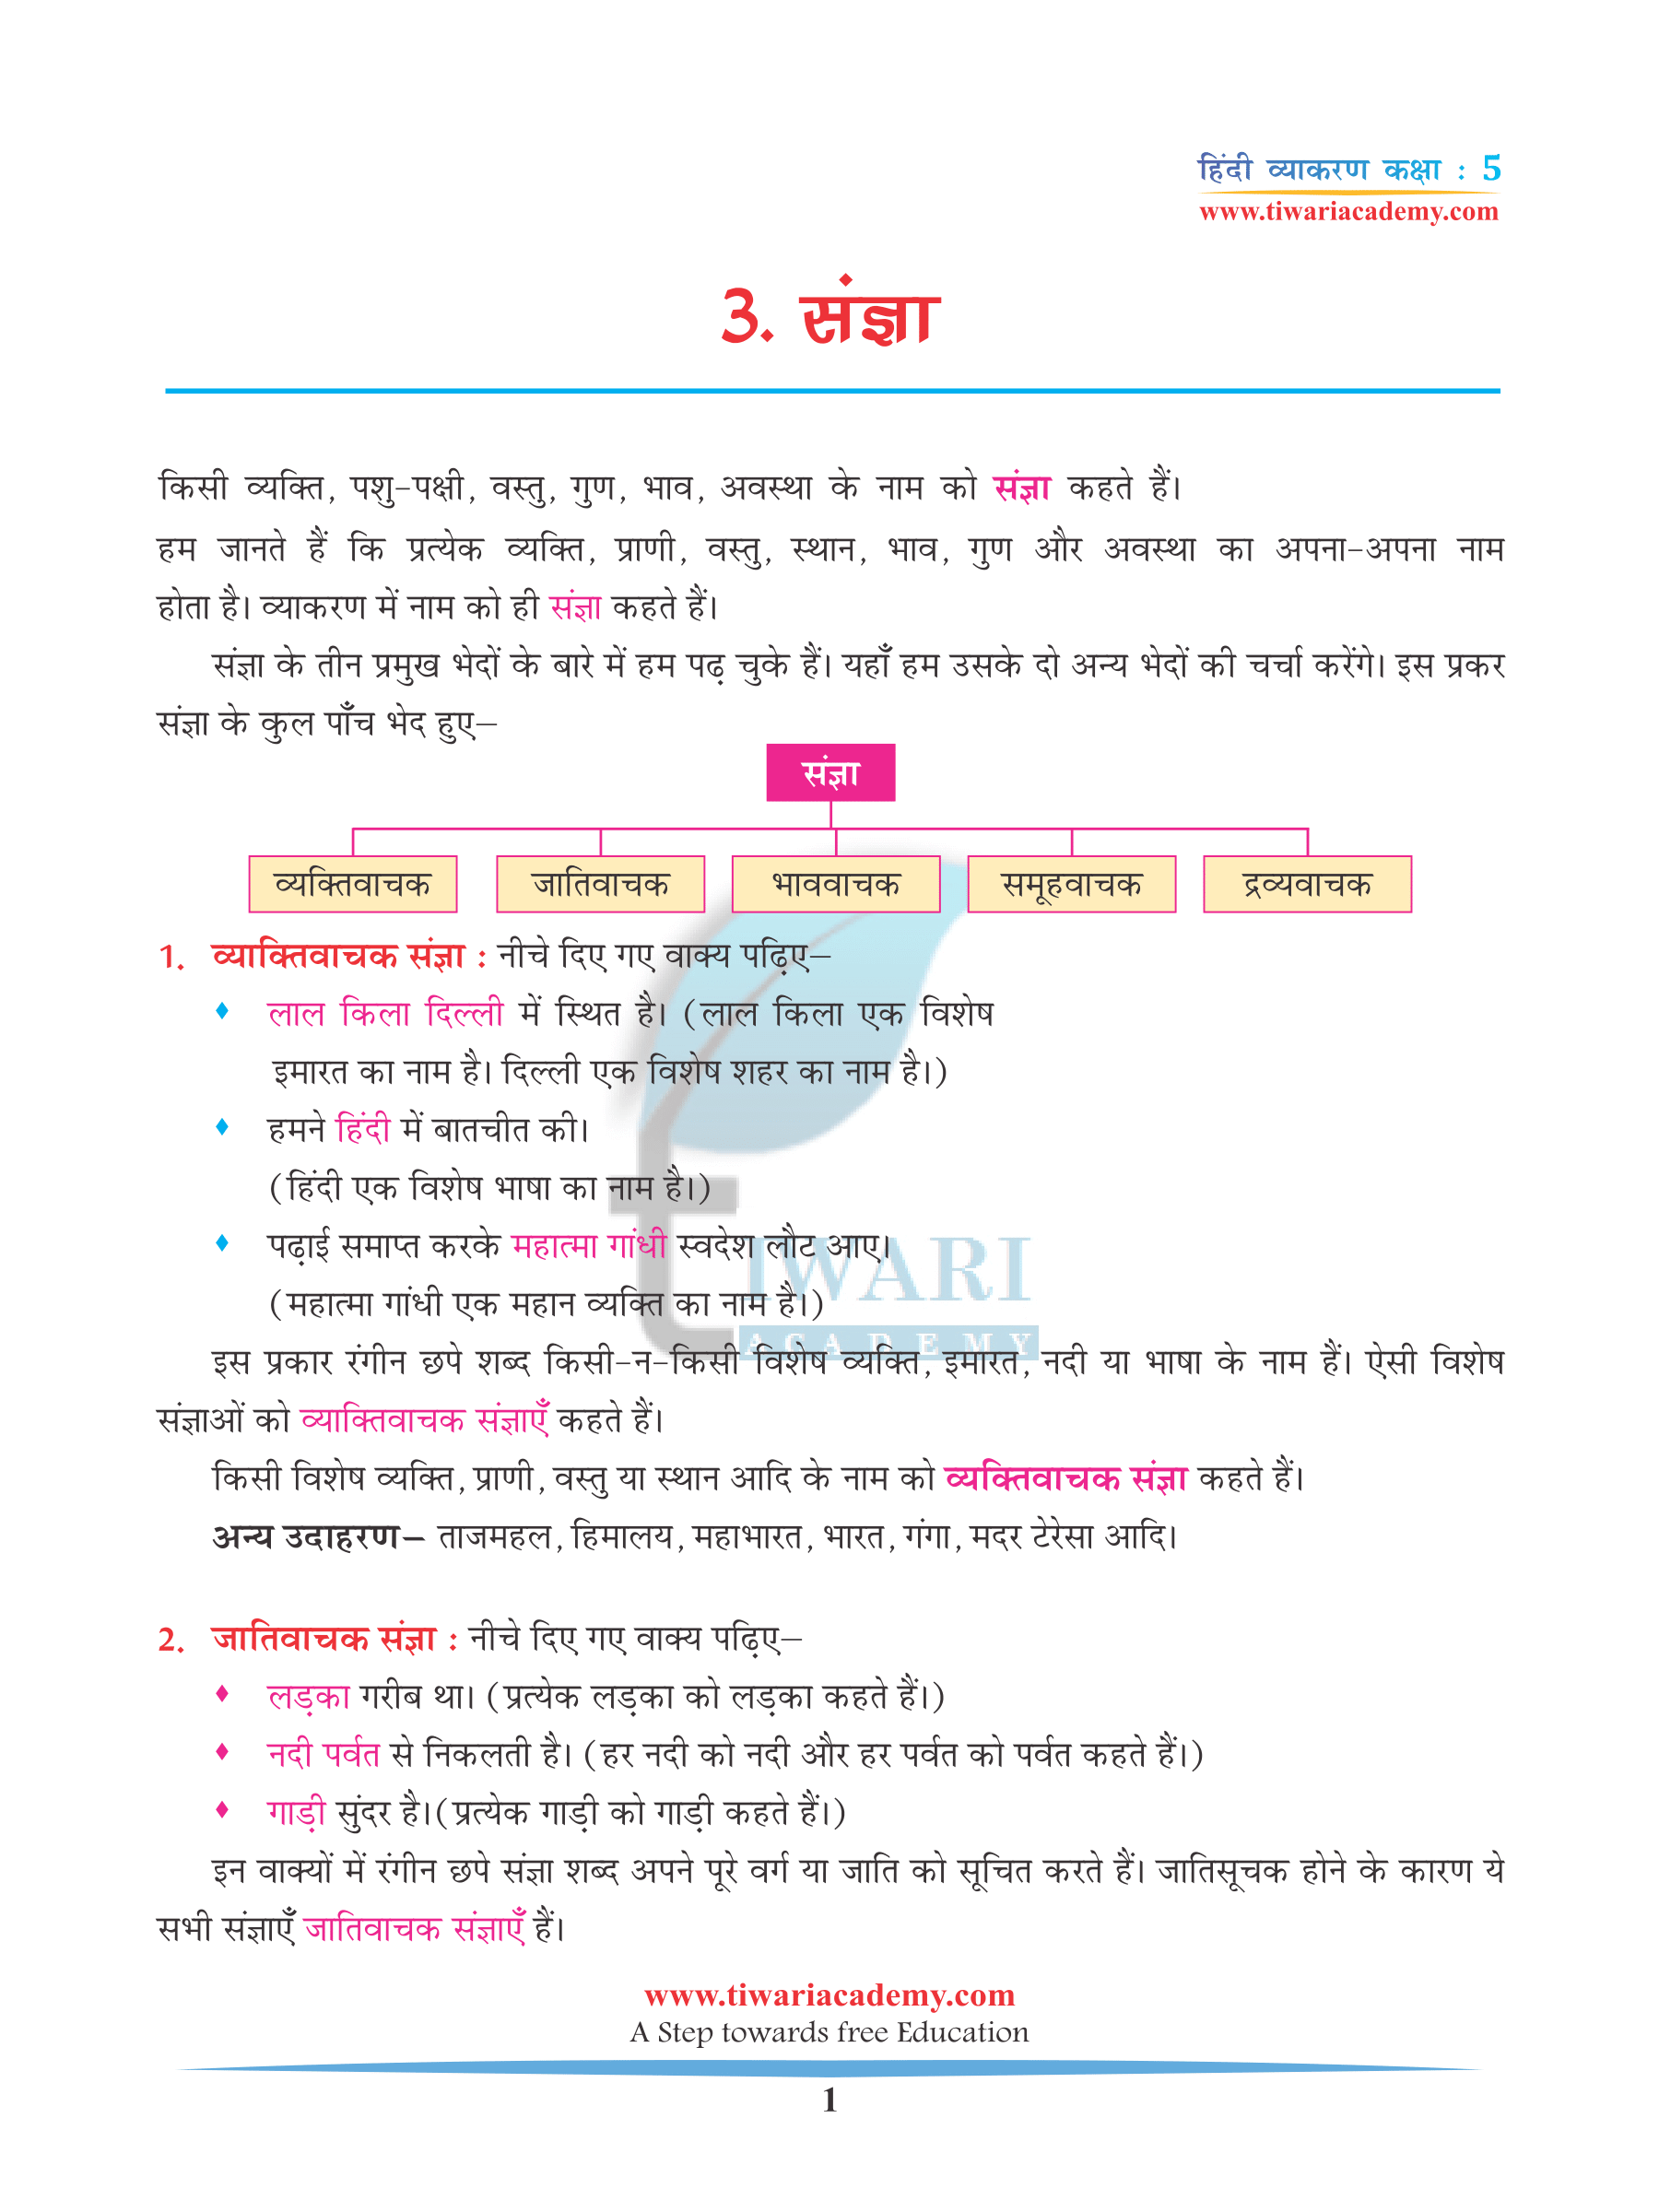 Class 5 Hindi Grammar Chapter 3 Sangya aur Sangya ke bhed